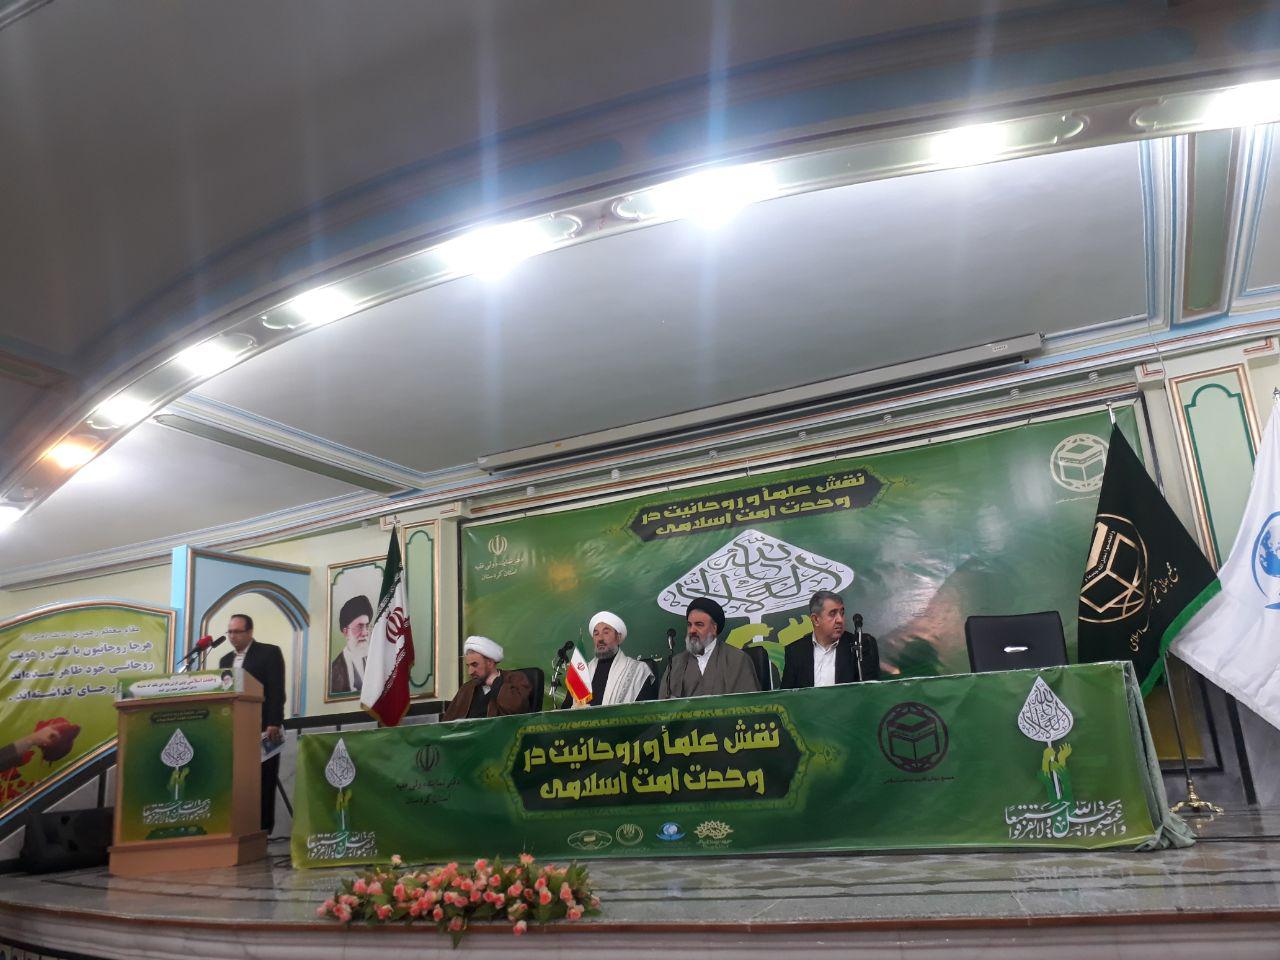 ملتقي دور العلماء ورجال الدين في توطيد الوحدة بين الامة الاسلامية في مدينة سنندج